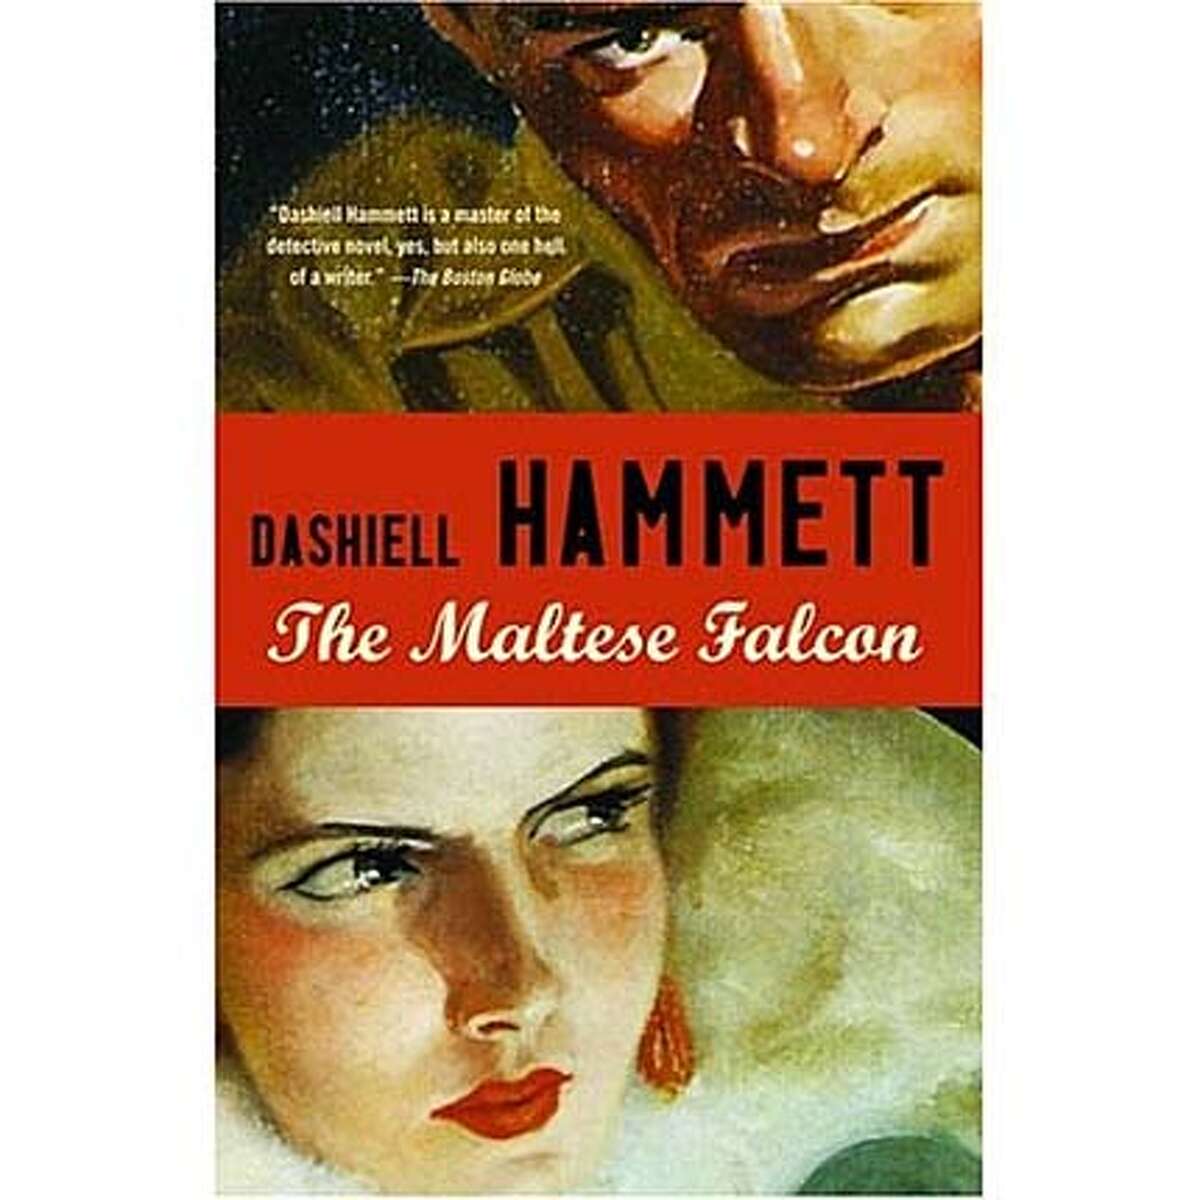 "The Maltese Falcon" by Dashiell Hammett